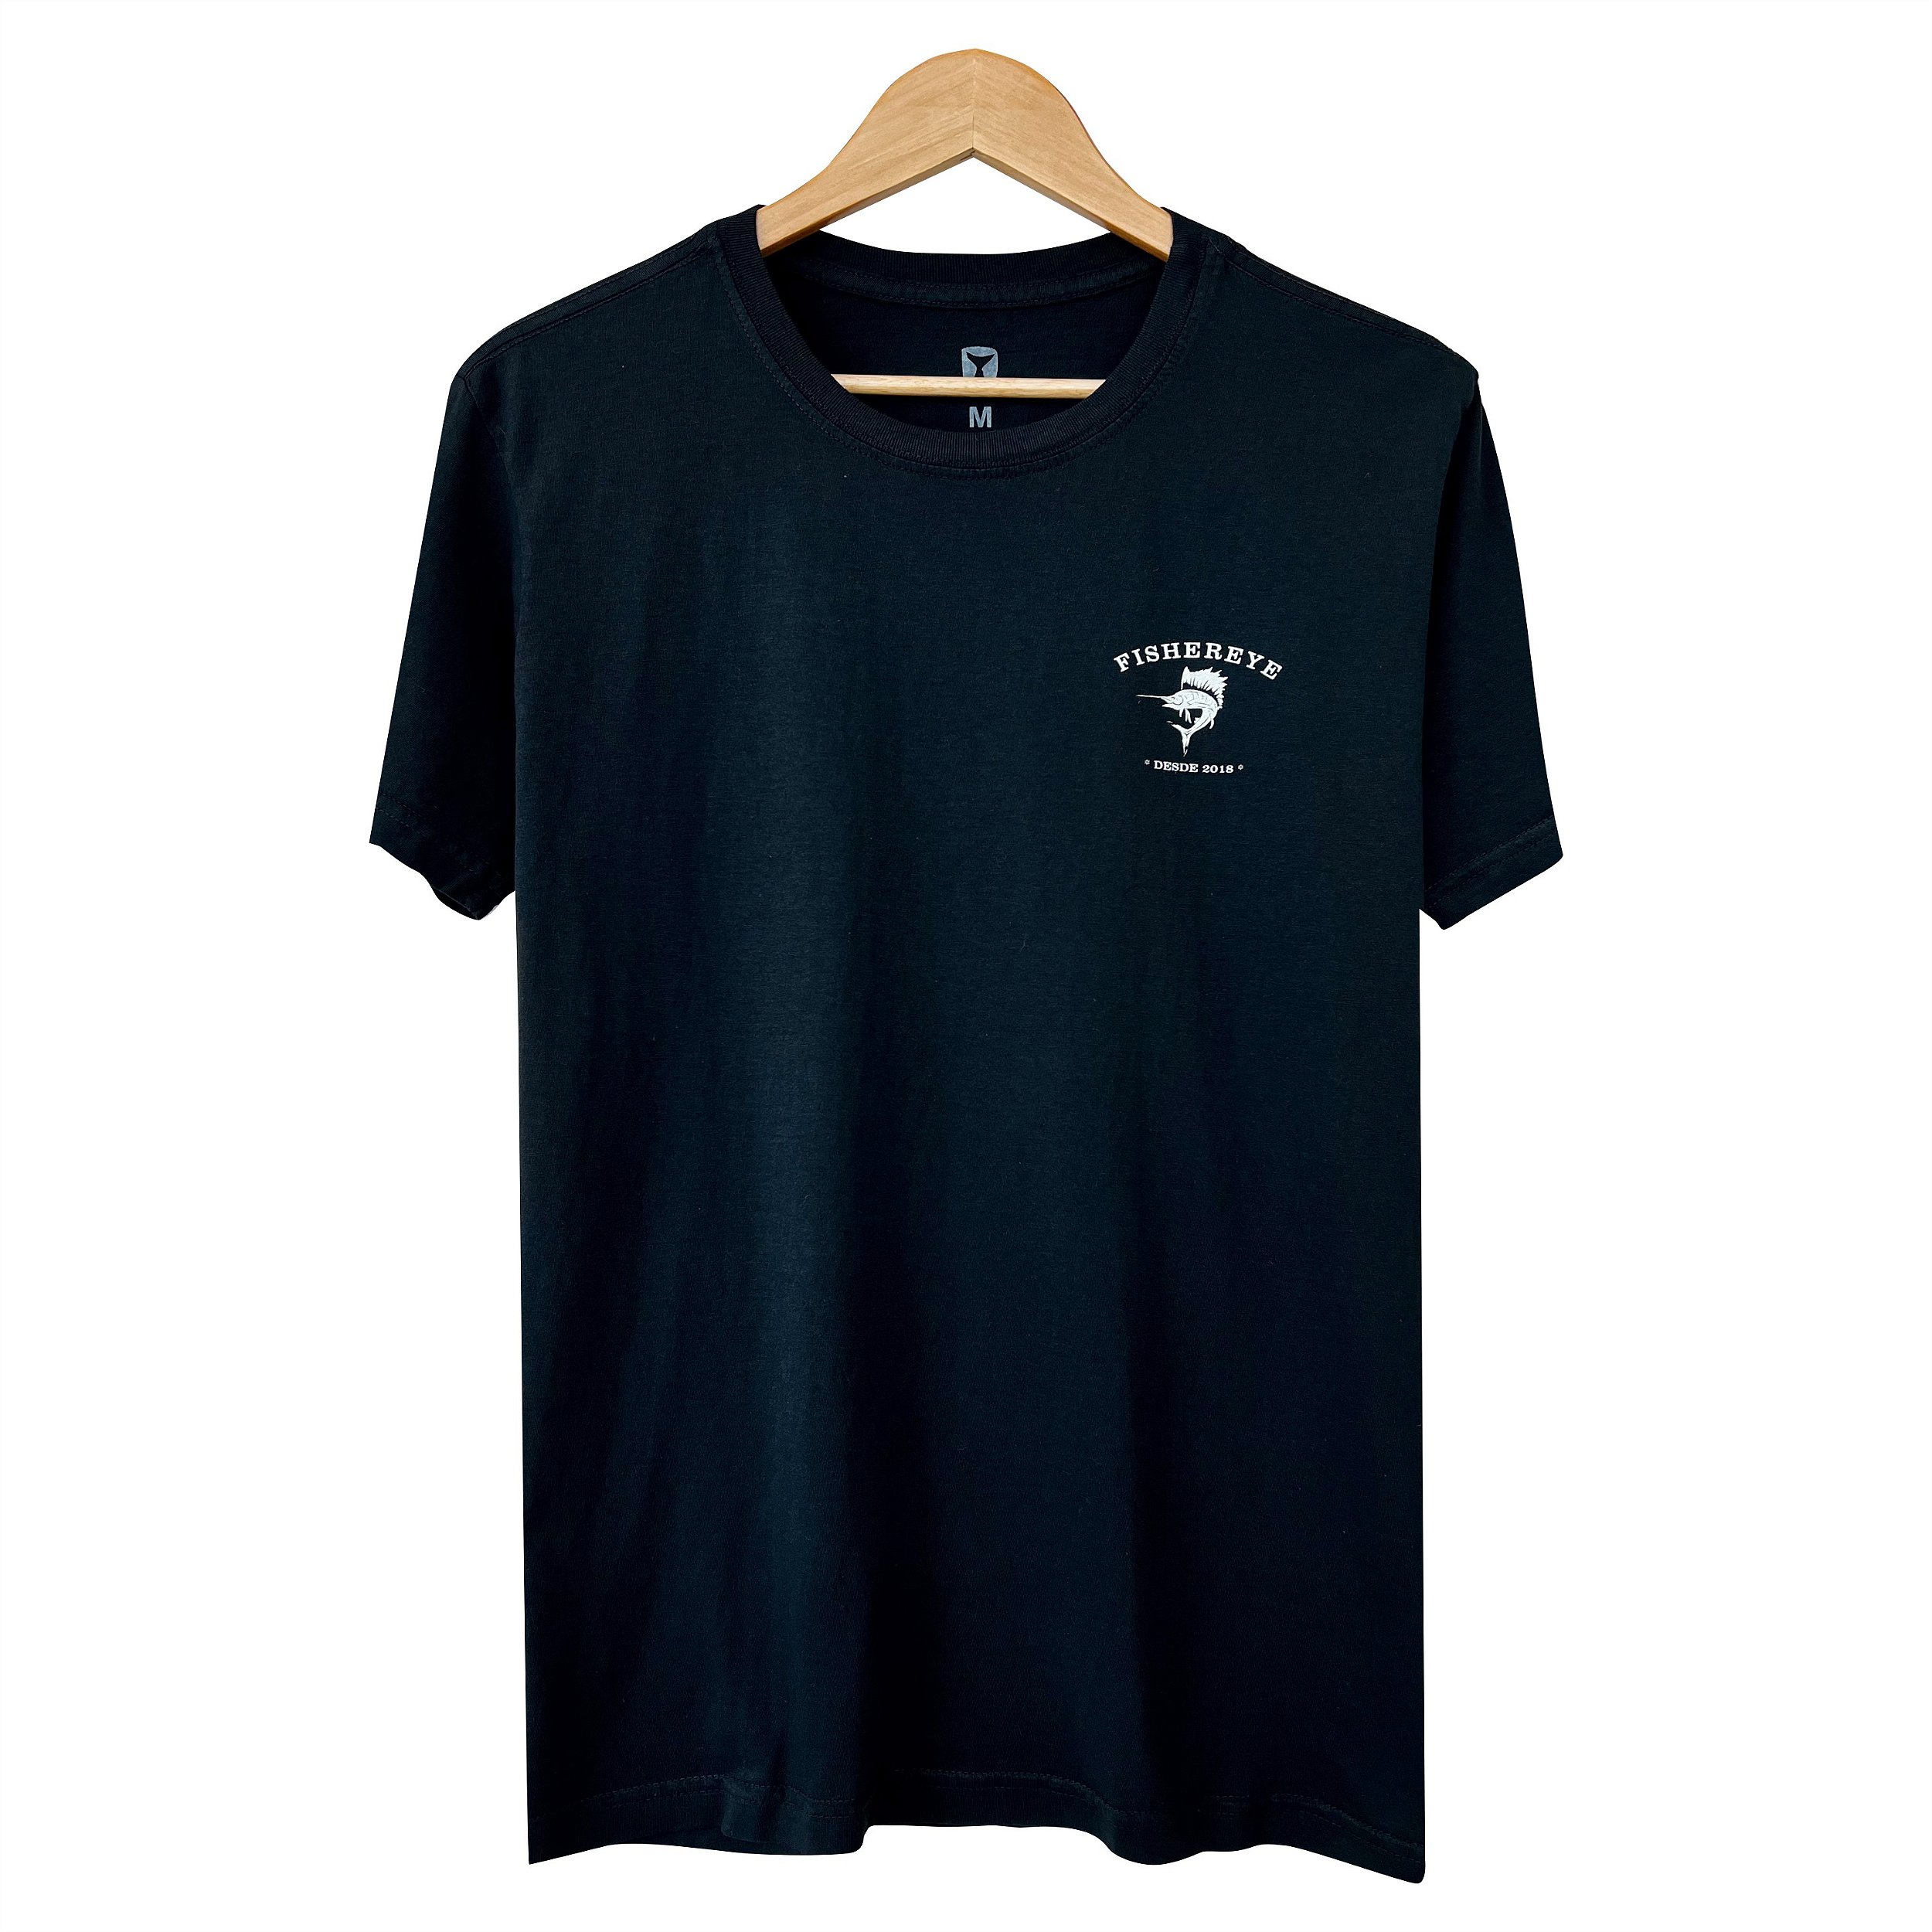 CAMISETA SURF - FISHEREYE  T-Shirts exclusivas para esportistas e